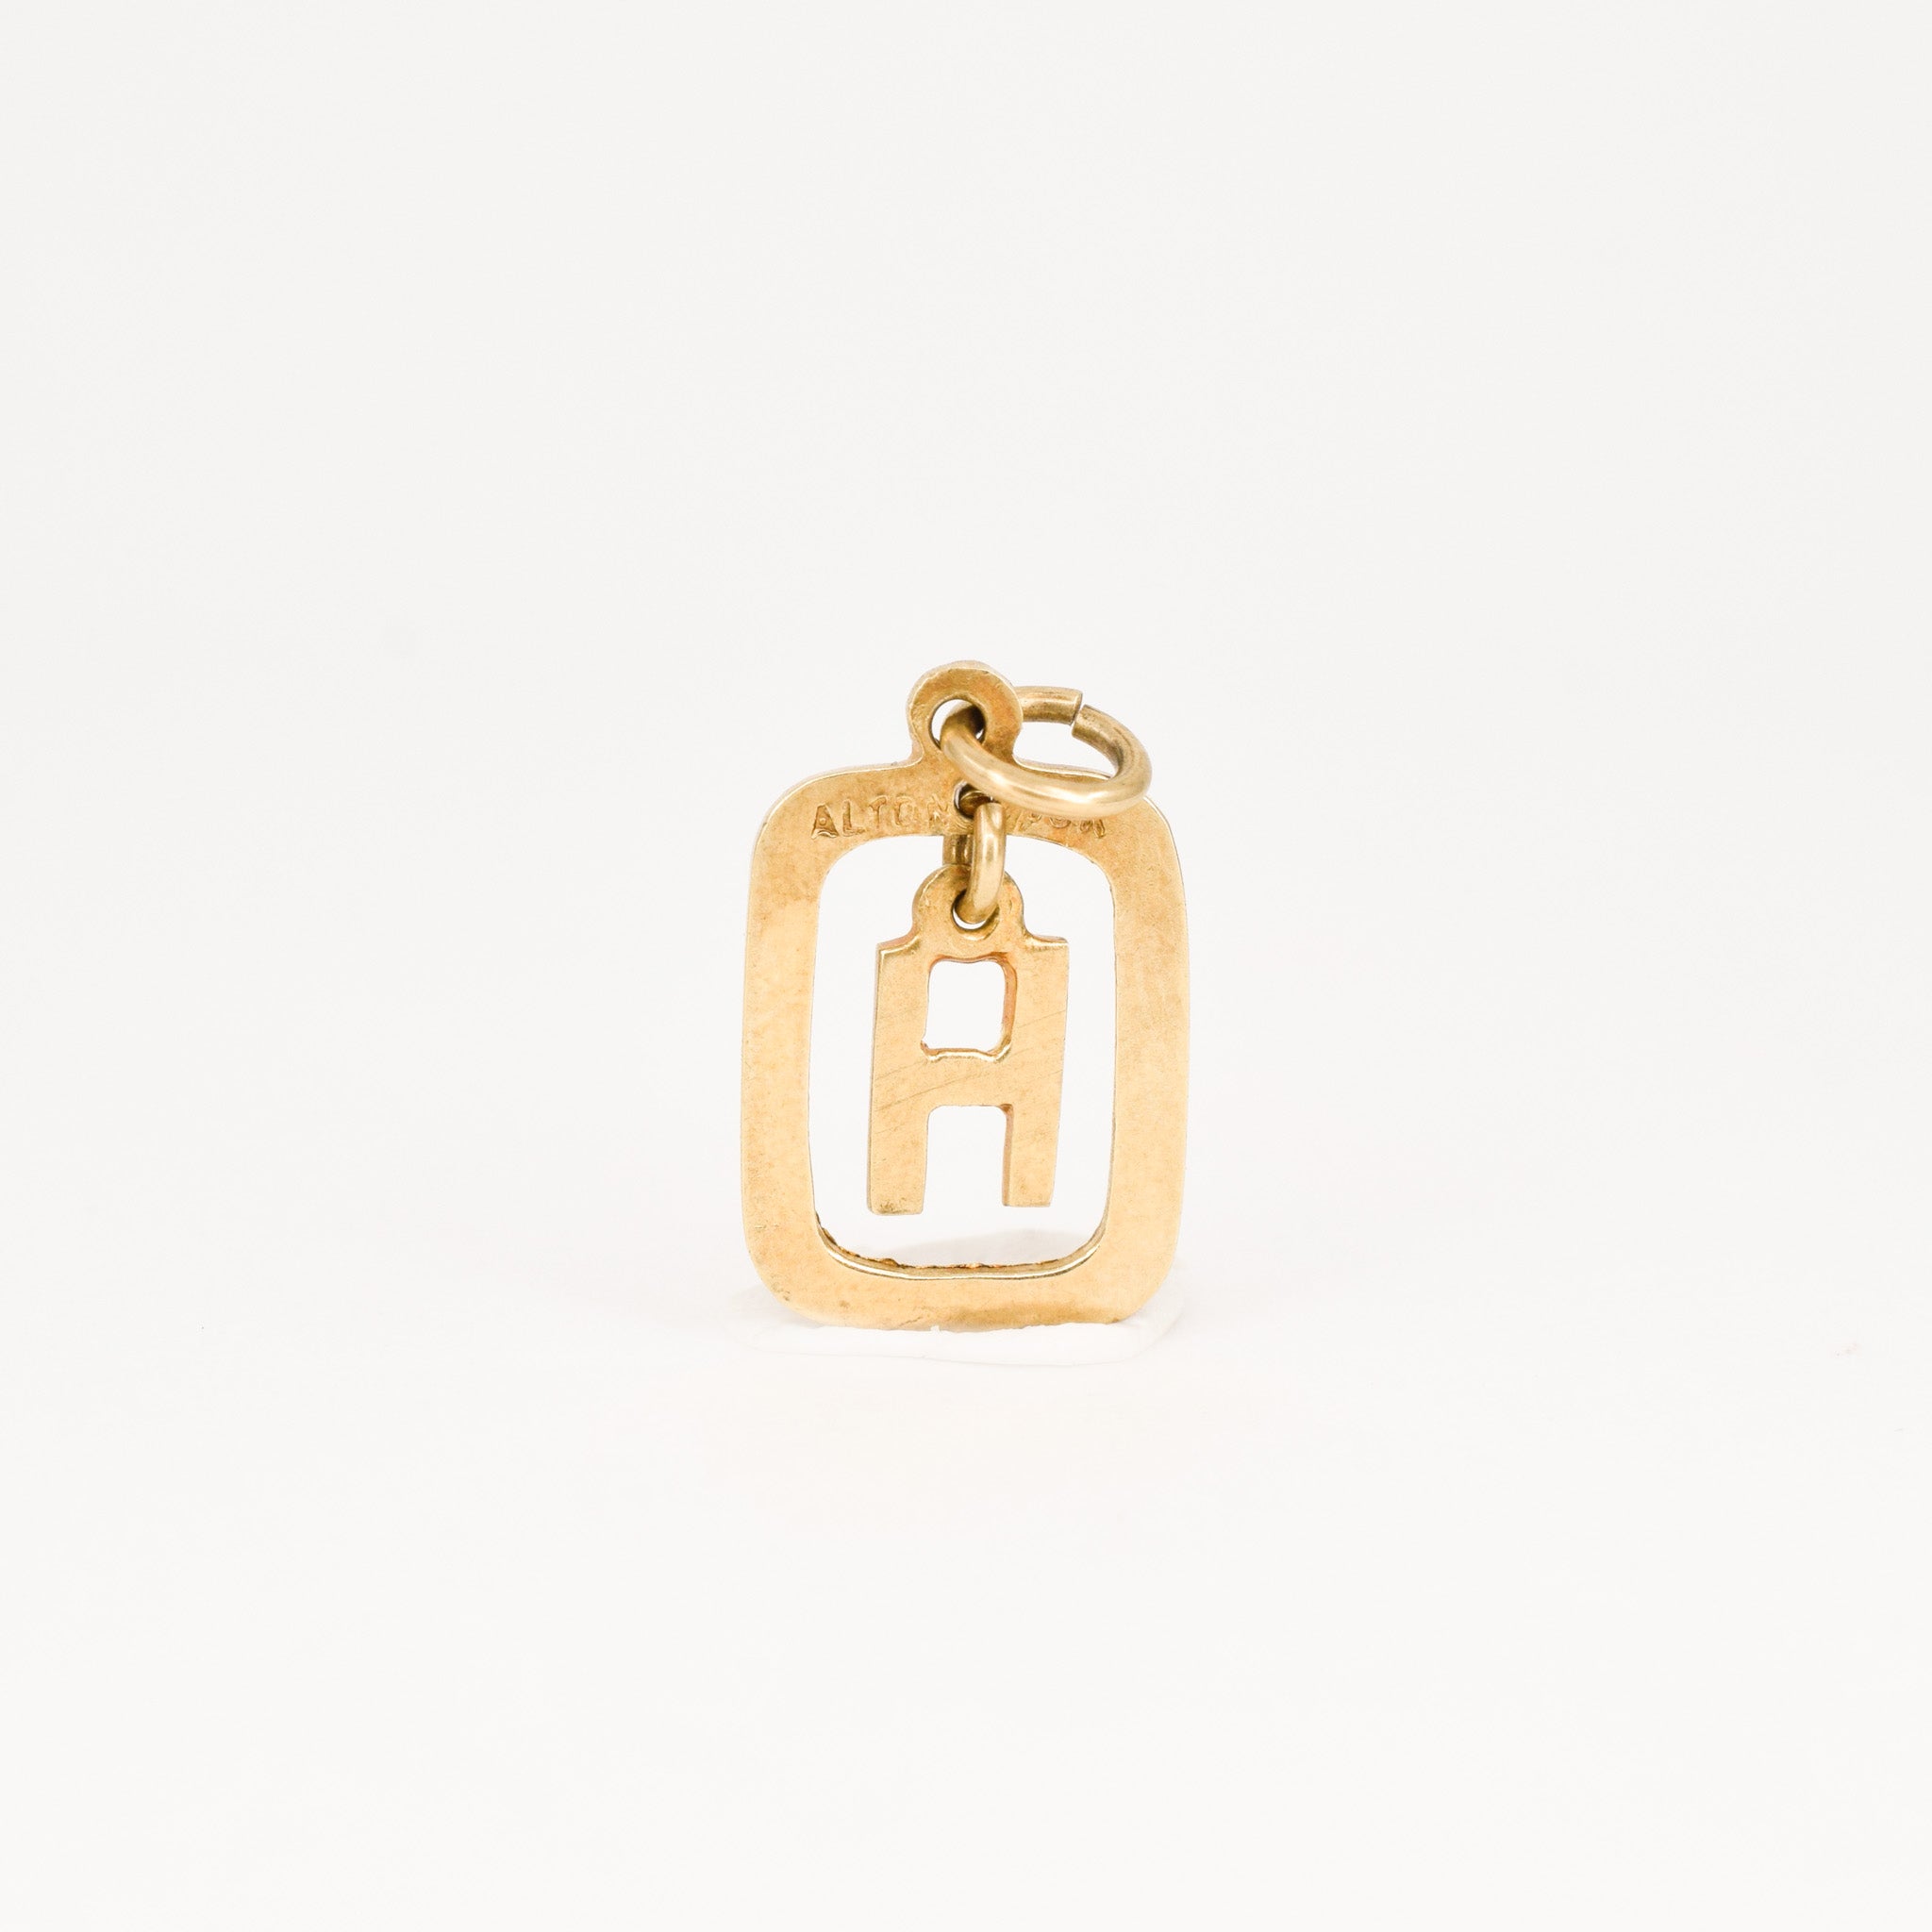 vintage gold H pendant, folklor vintage jewelry canada